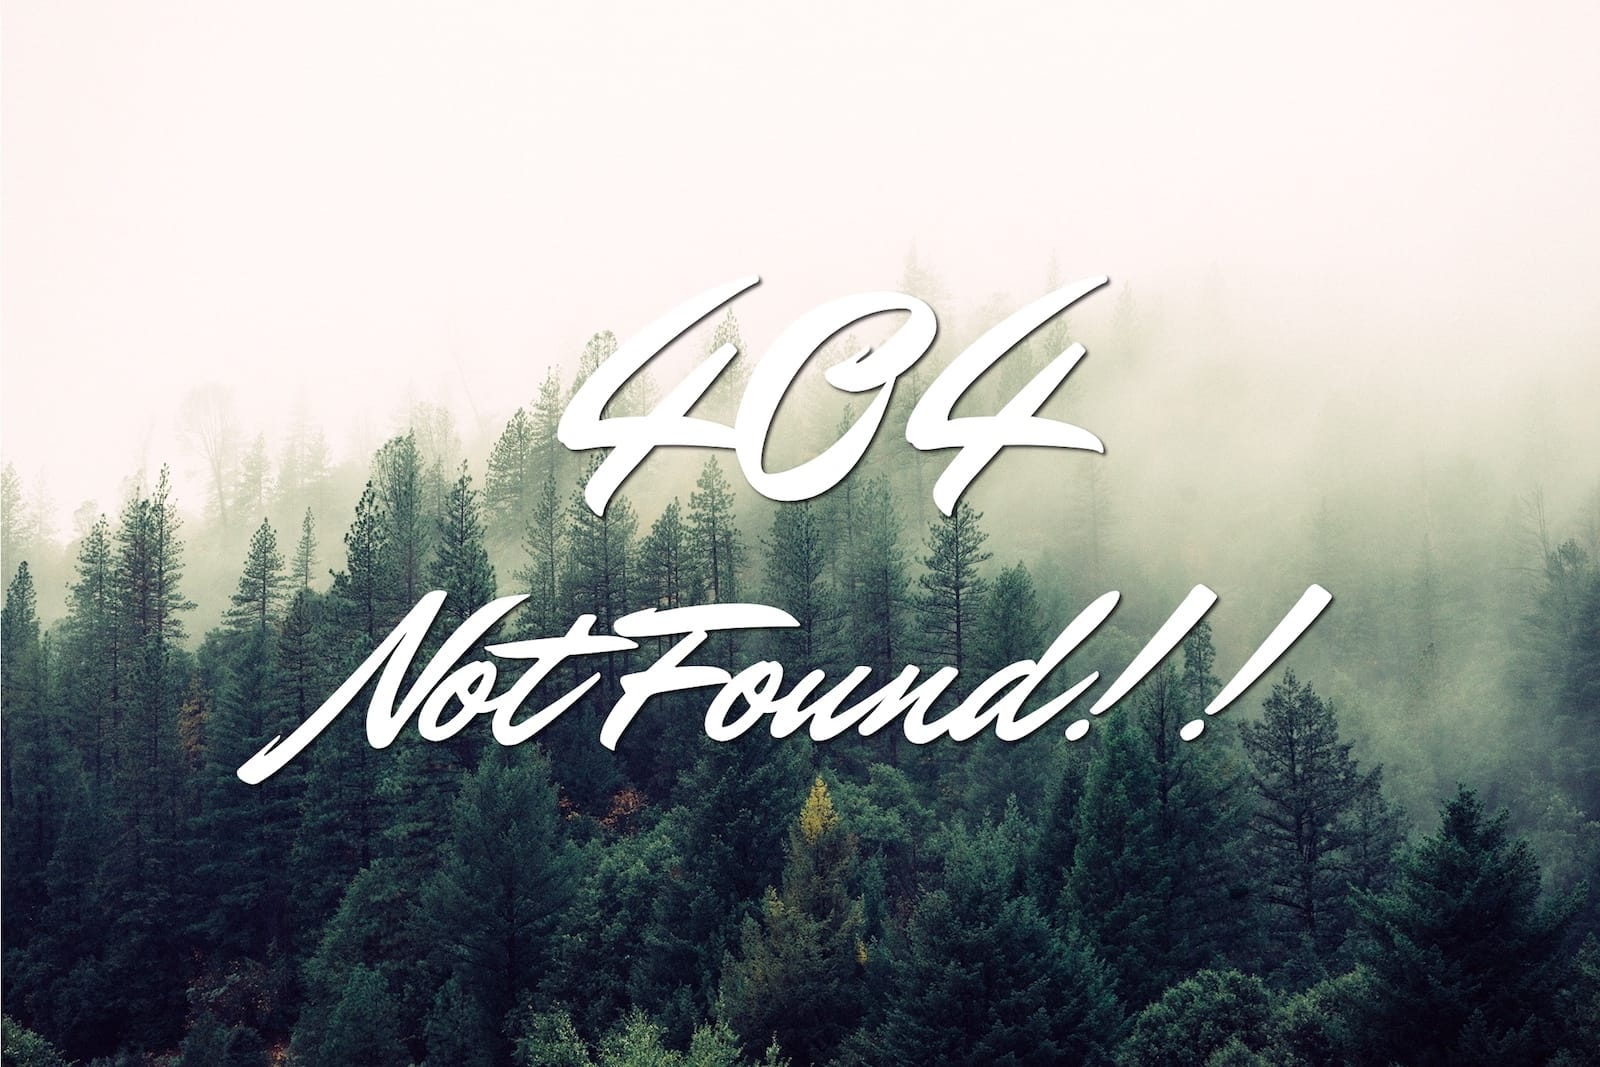 404 not found!